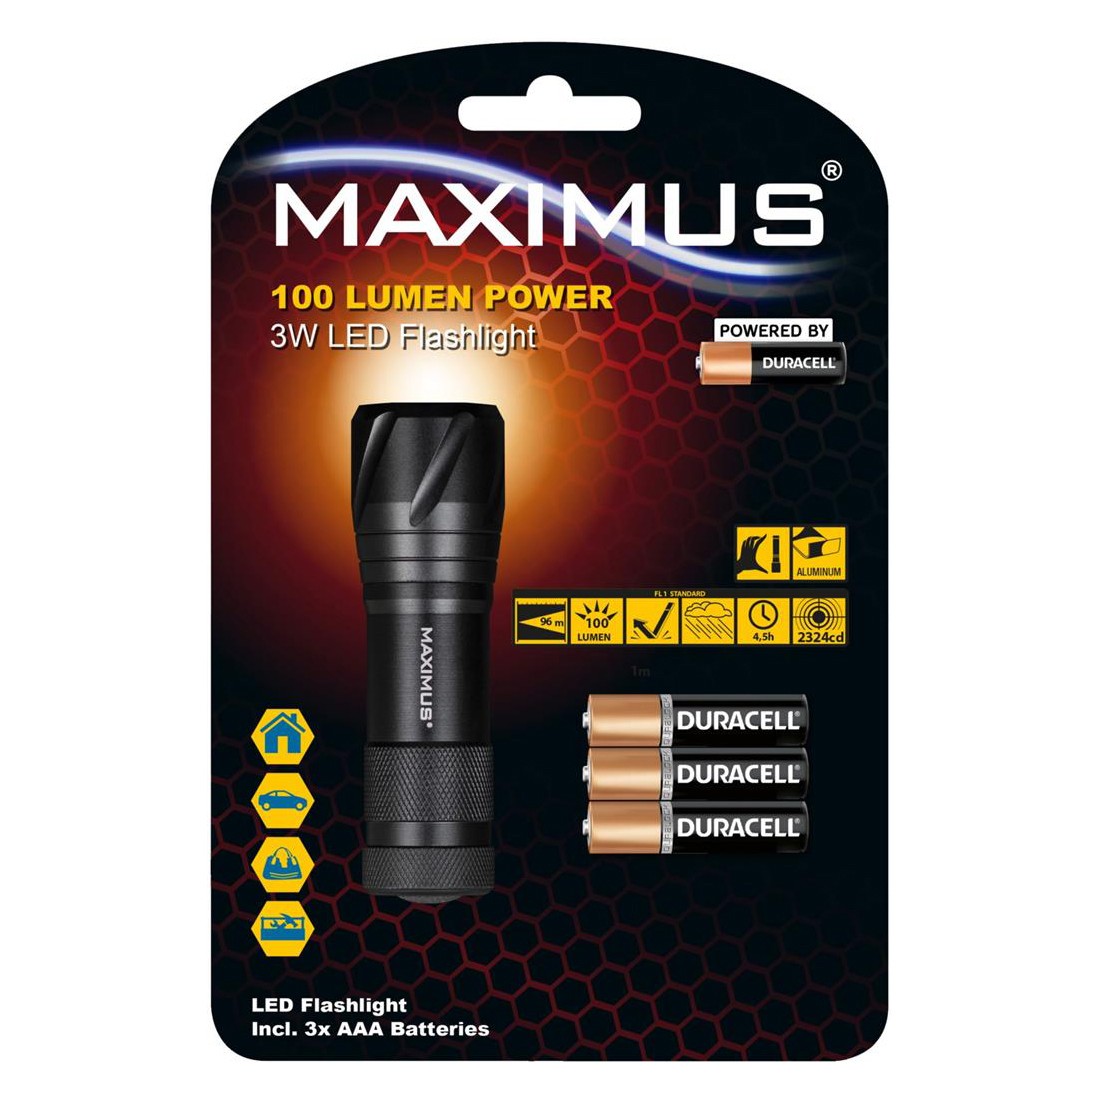 Φακός Αλουμινίου Maximus 3W Led Flashlight IPX4 100 Lumens Απόσταση 96m Μαύρος